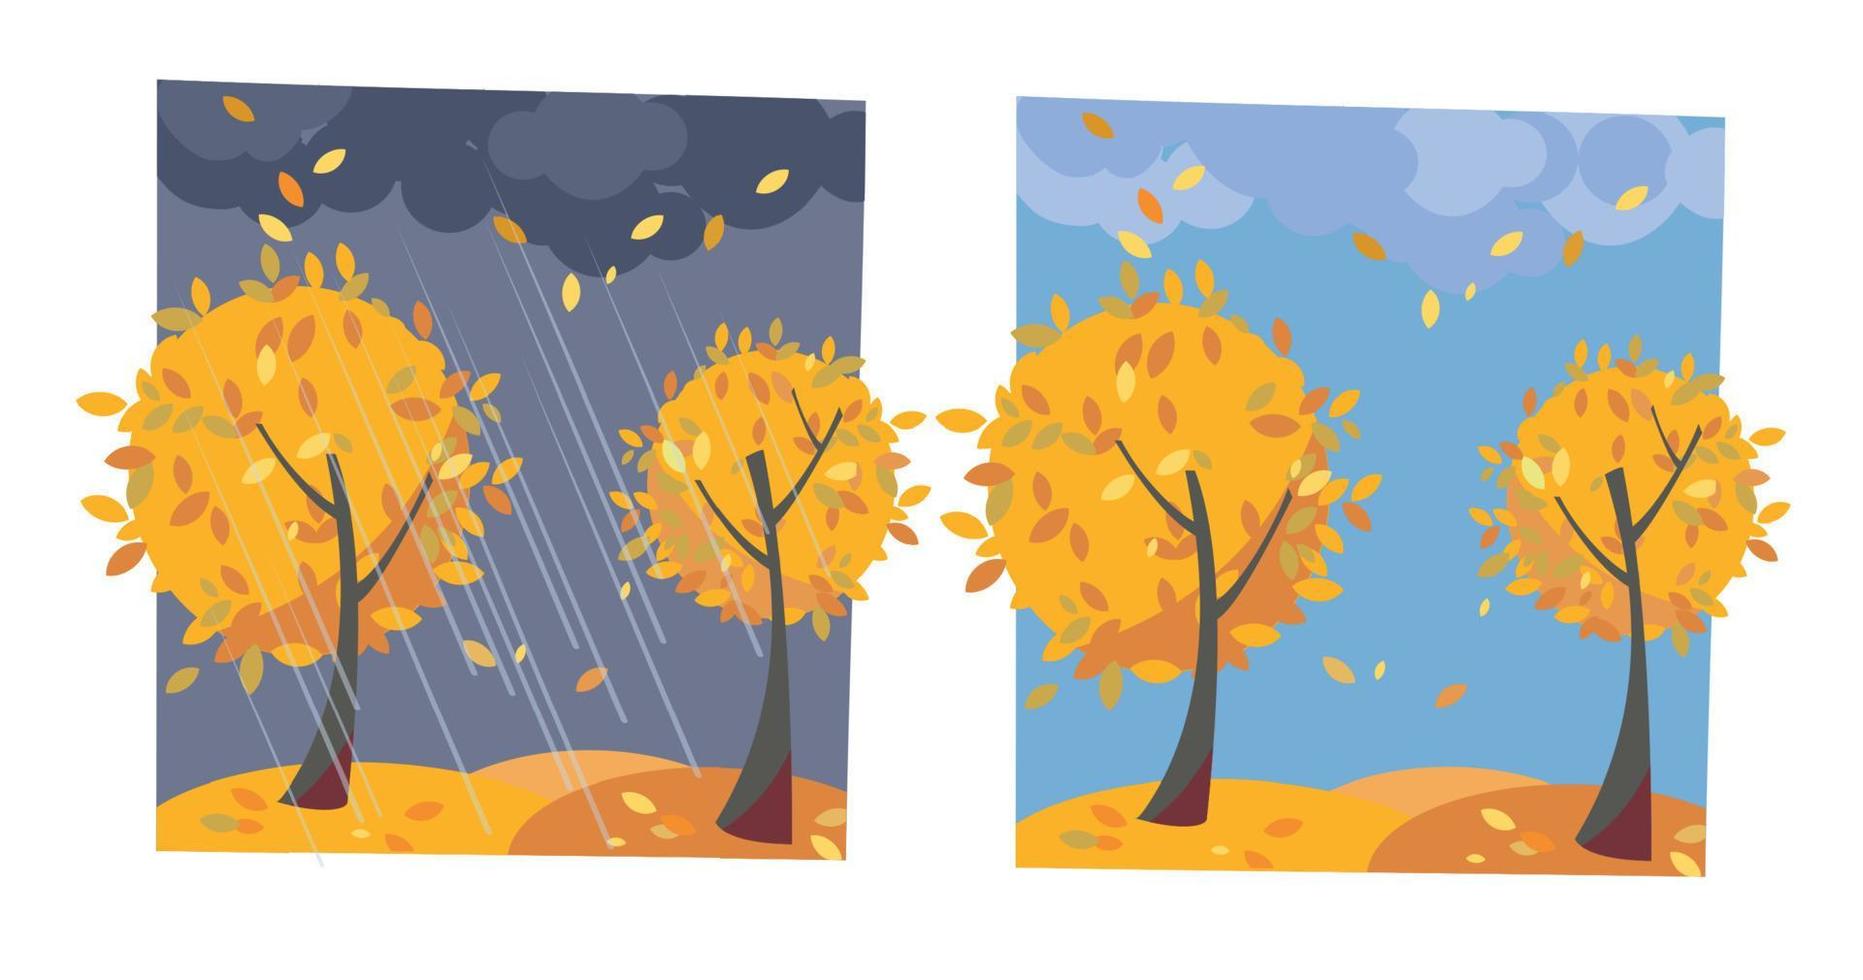 árvores amarelas de outono com folhas a voar. conjunto de duas imagens não paralelas com vista de bom tempo ensolarado e tarde chuvosa. ilustração em vetor plana dos desenhos animados. árvores com coroa redonda de folhas clássicas